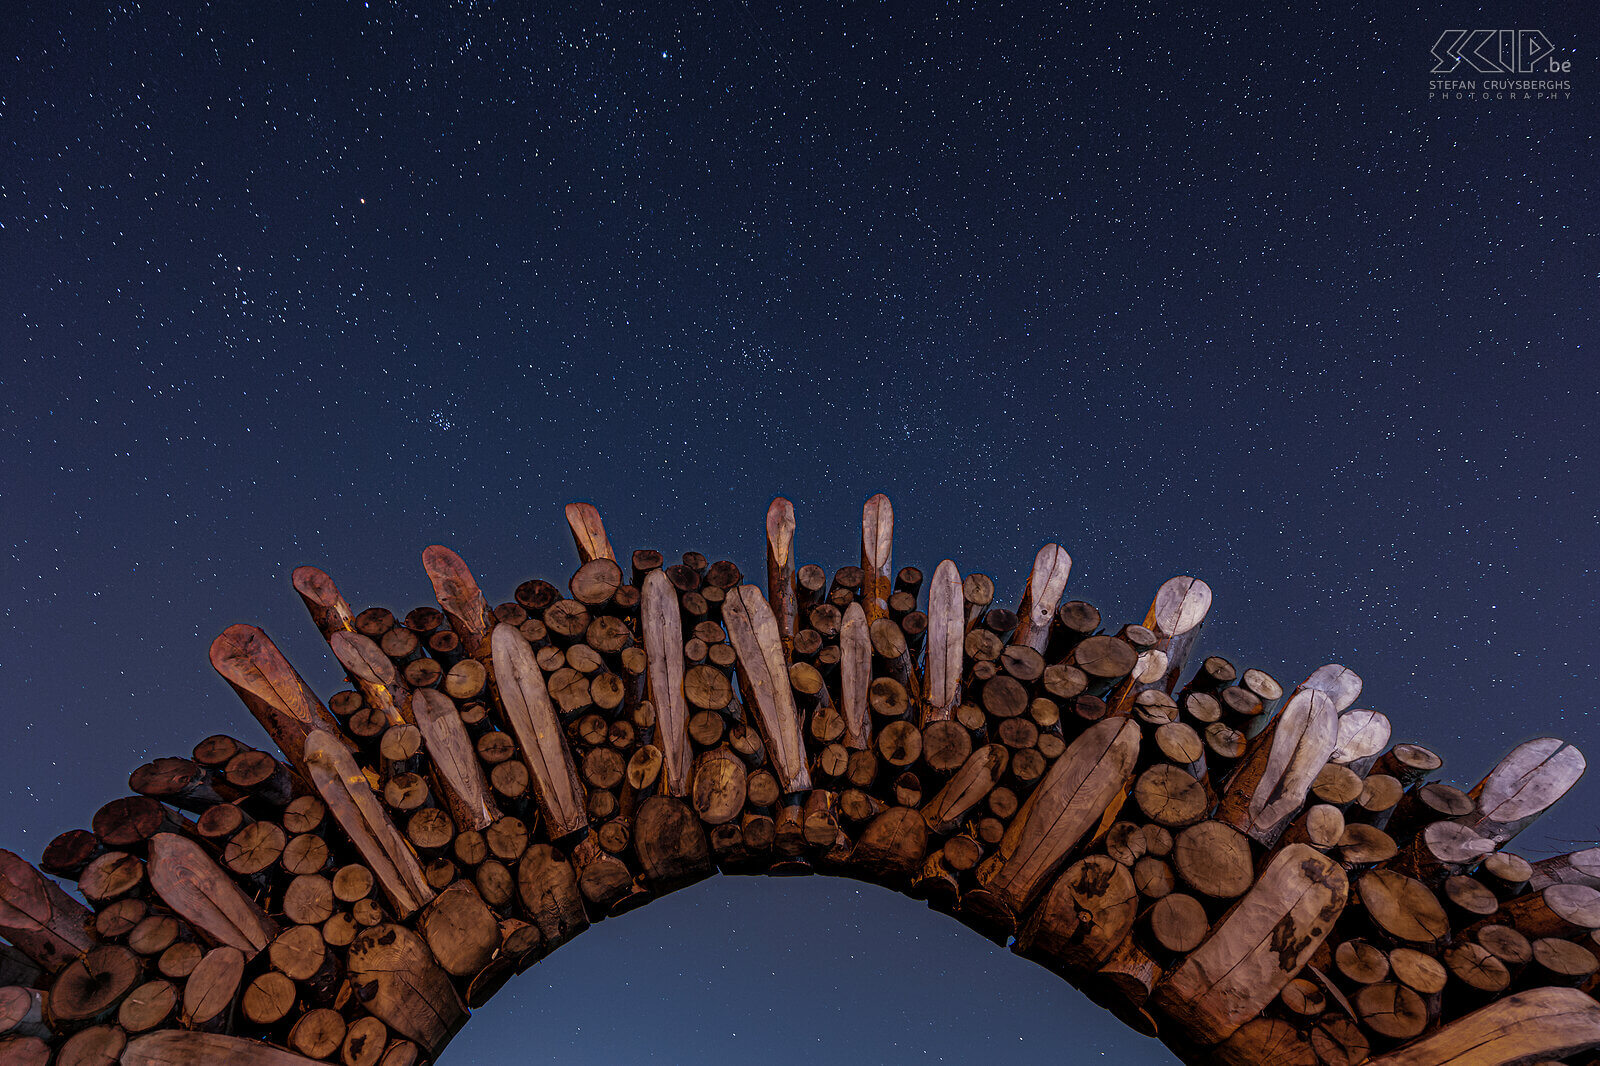 Hageland by night - Poort Chartreuzenbos in Holsbeek Een prachtige sterrenhemel aan de poort aan de rand van het Chartreuzenbos, gelegen in Holsbeek en Lubbeek. De houten poort is een mooi kunstwerk in de vorm van een zon.  Stefan Cruysberghs